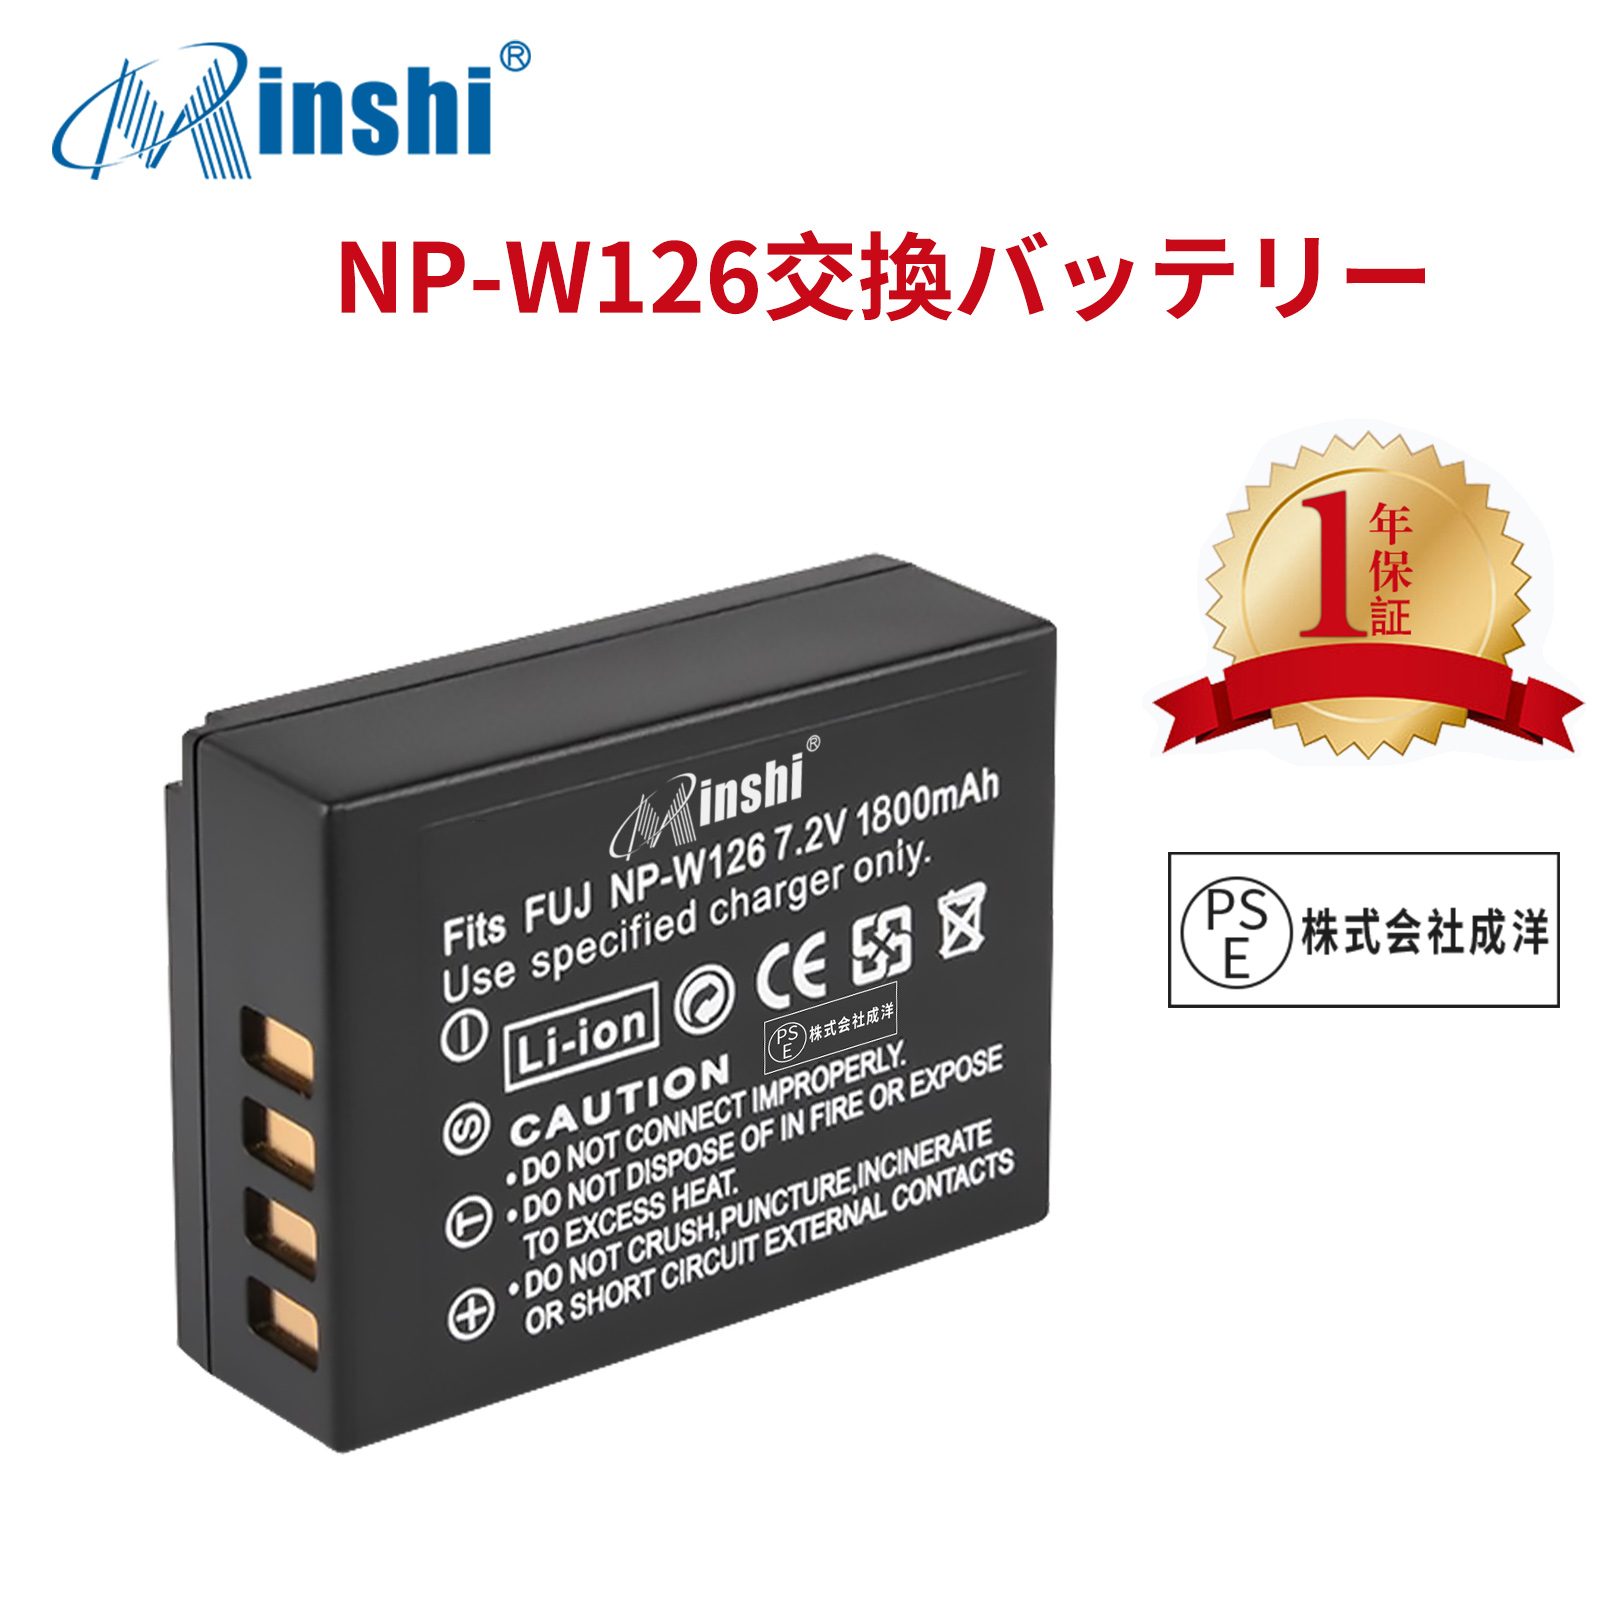 【1年保証】minshi FUJIFILM X100F NP-W126 【1800mAh 7.2V】 NP-W126 NP-W126S高品質 NP-W126S NP-W126互換バッテリー